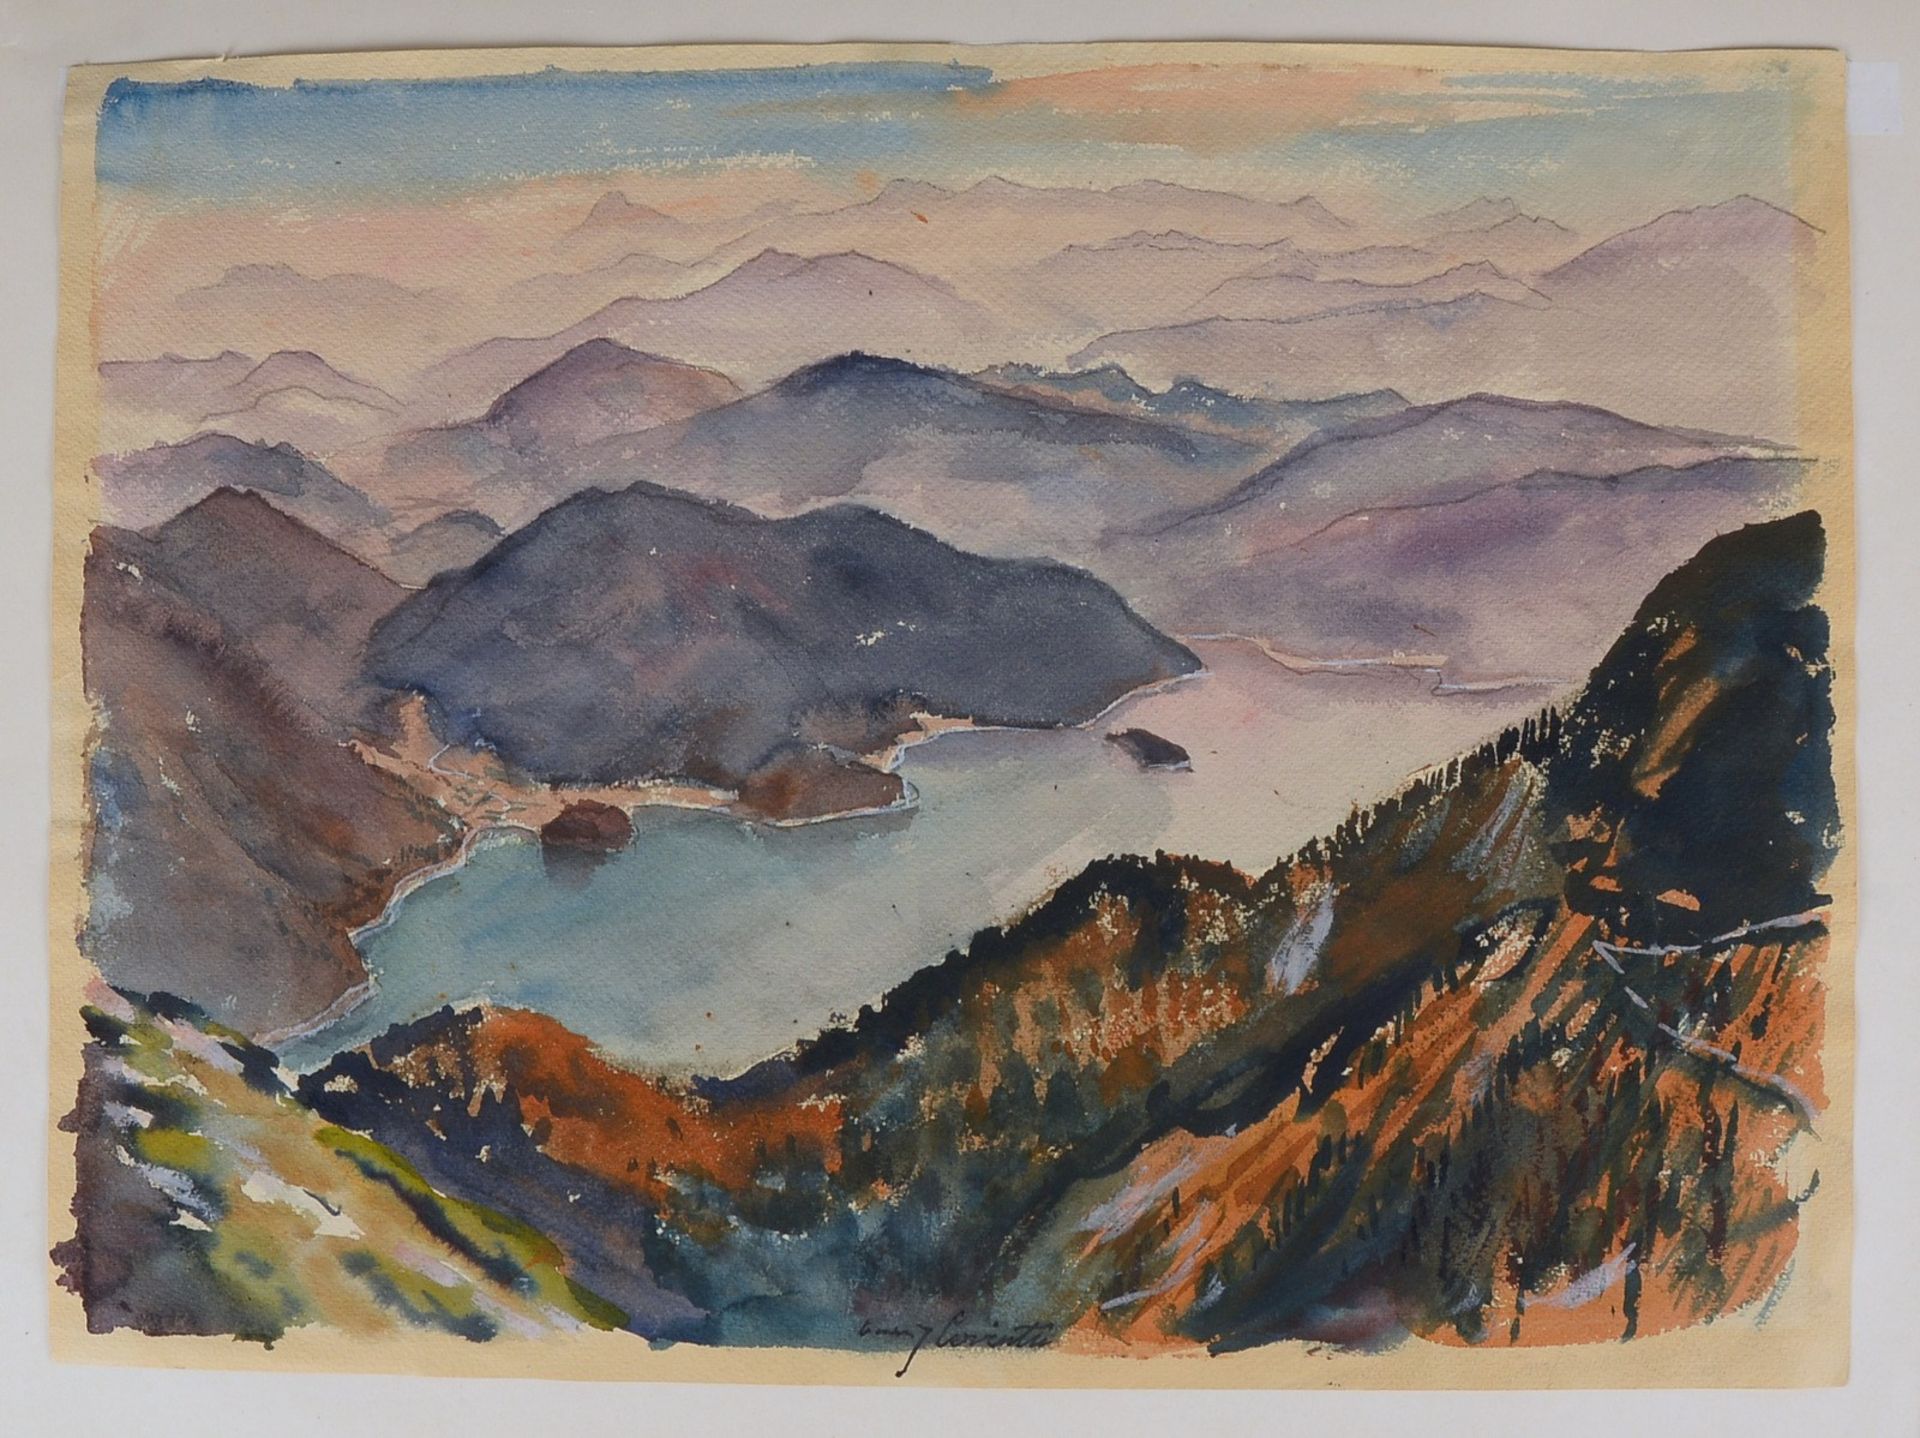 Corinth, Lovis zugeschr., 'Walchensee', Aquarell, sign./dat. '1923', verso bez./gest., unter PP